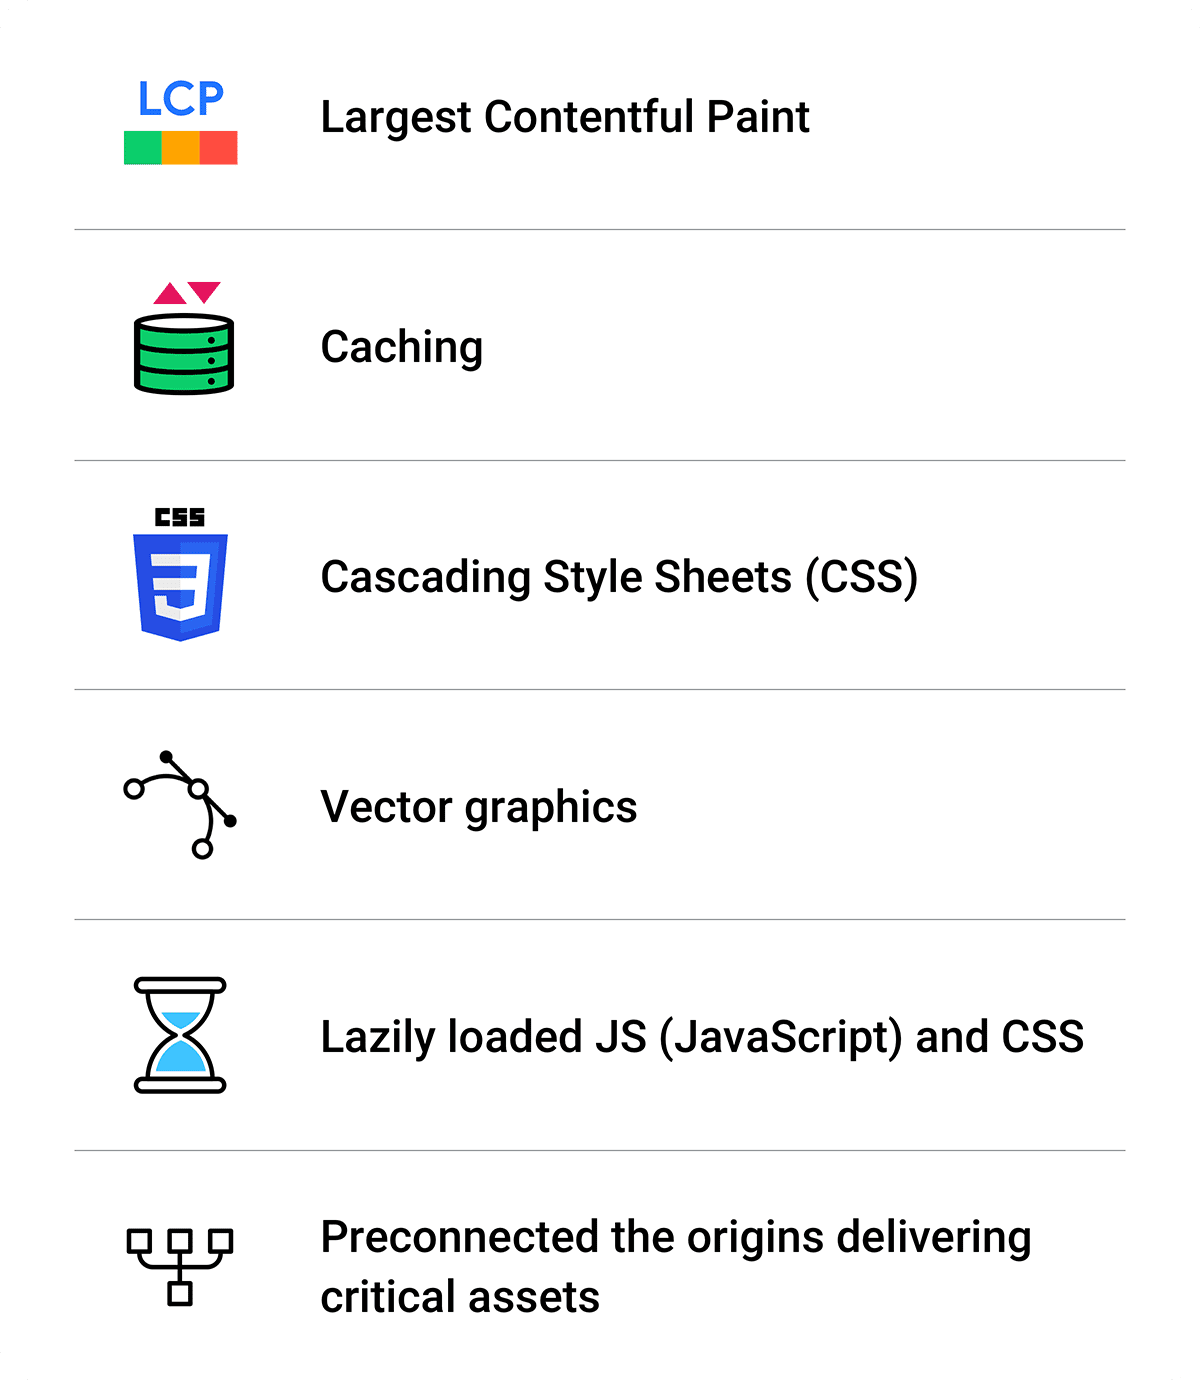 สรุปการเพิ่มประสิทธิภาพ: Largest Contentful Paint, การแคช, CSS, กราฟิกเวกเตอร์, JS และ CSS ที่โหลดแบบ Lazy Loading, การเชื่อมต่อล่วงหน้า